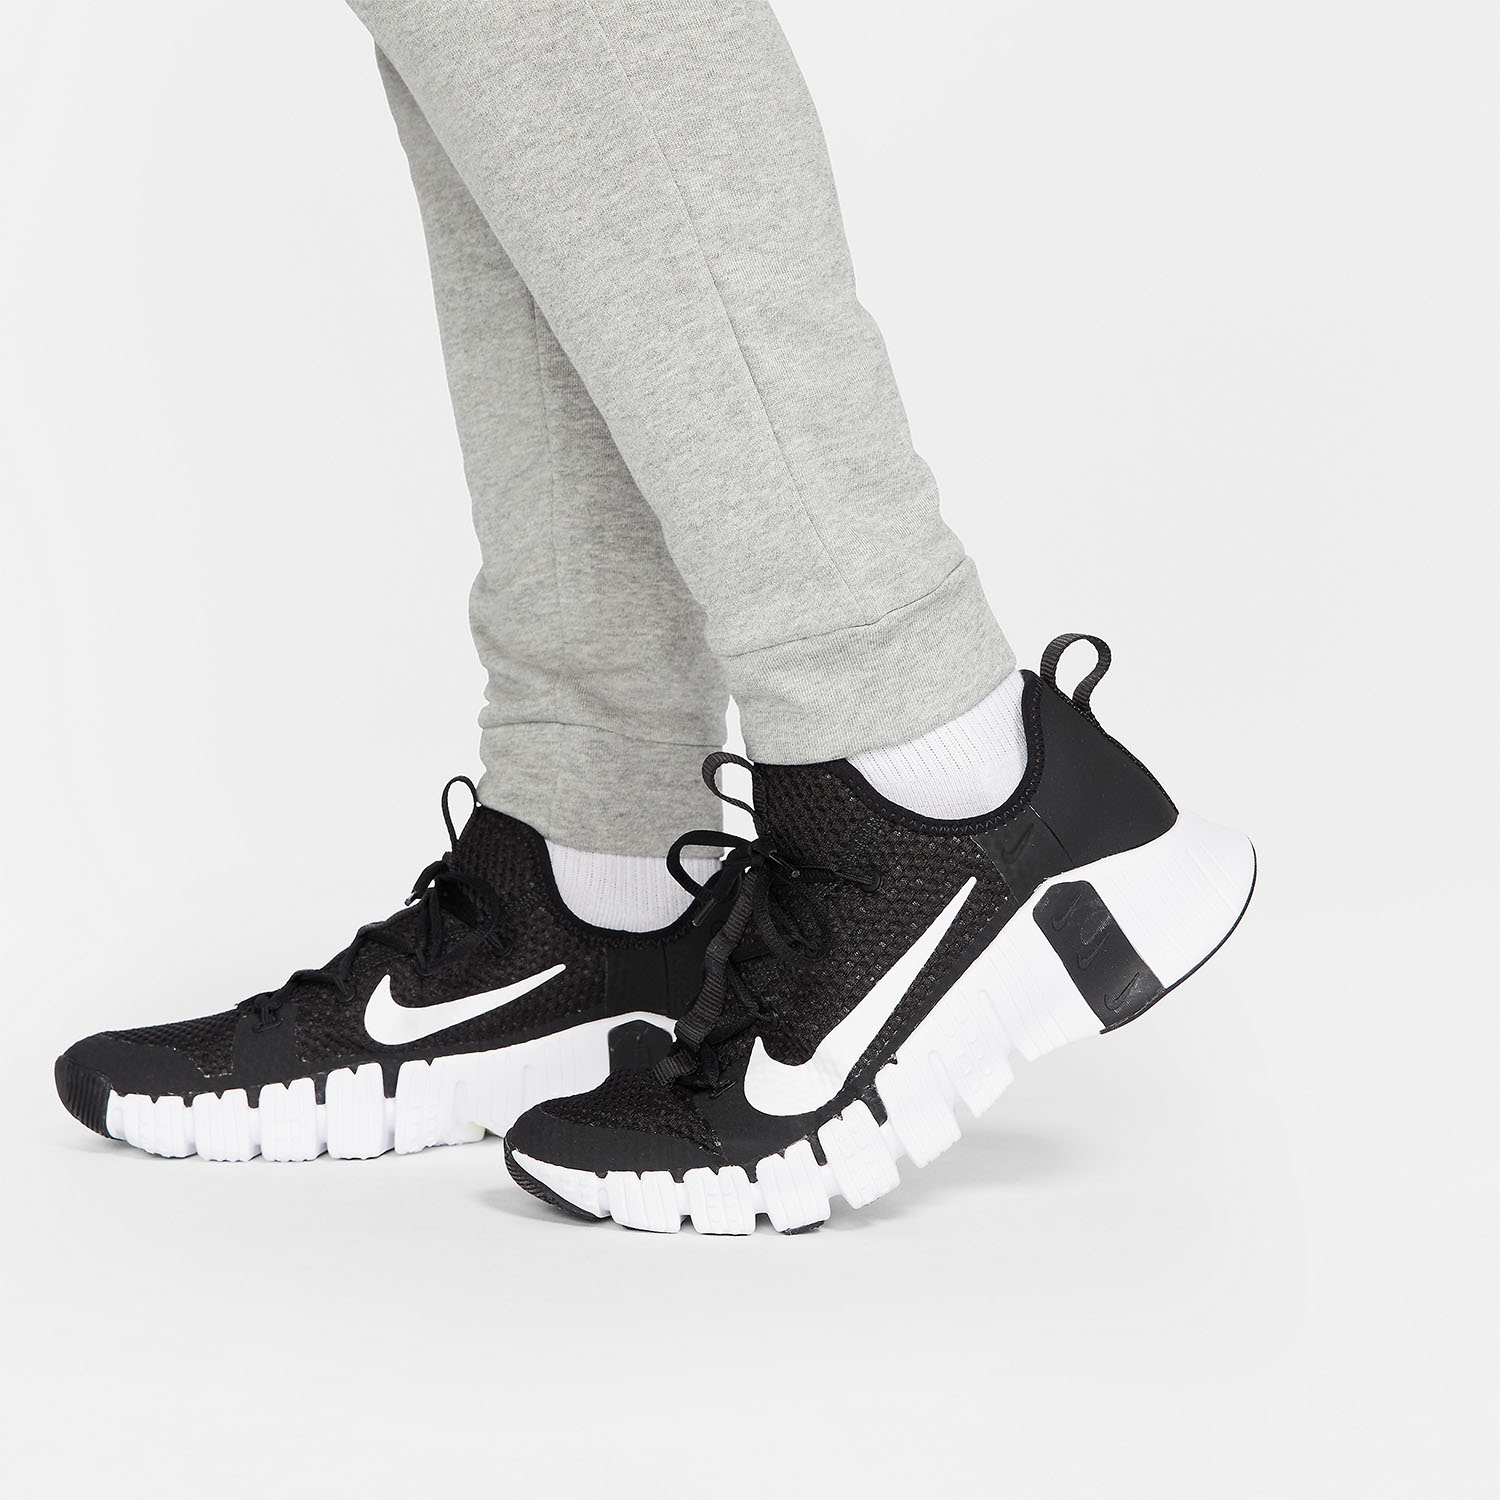 Nike Dri-FIT Swoosh Pants - Dark Grey Heather/Black